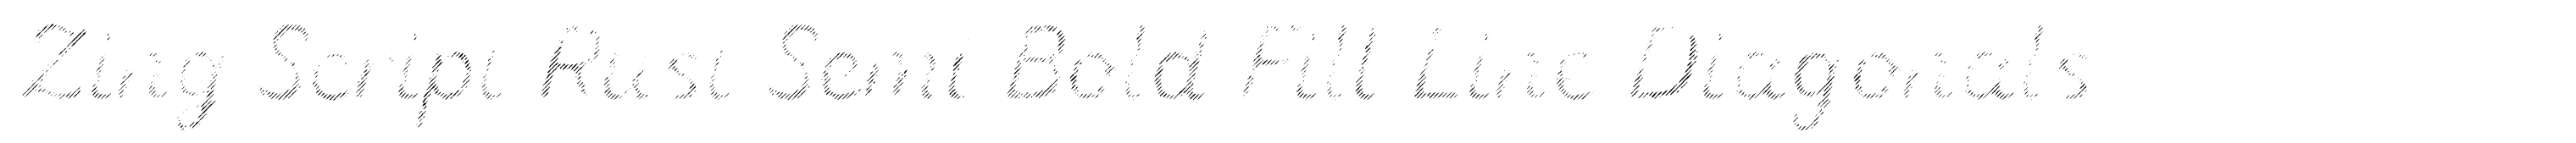 Zing Script Rust Semi Bold Fill Line Diagonals